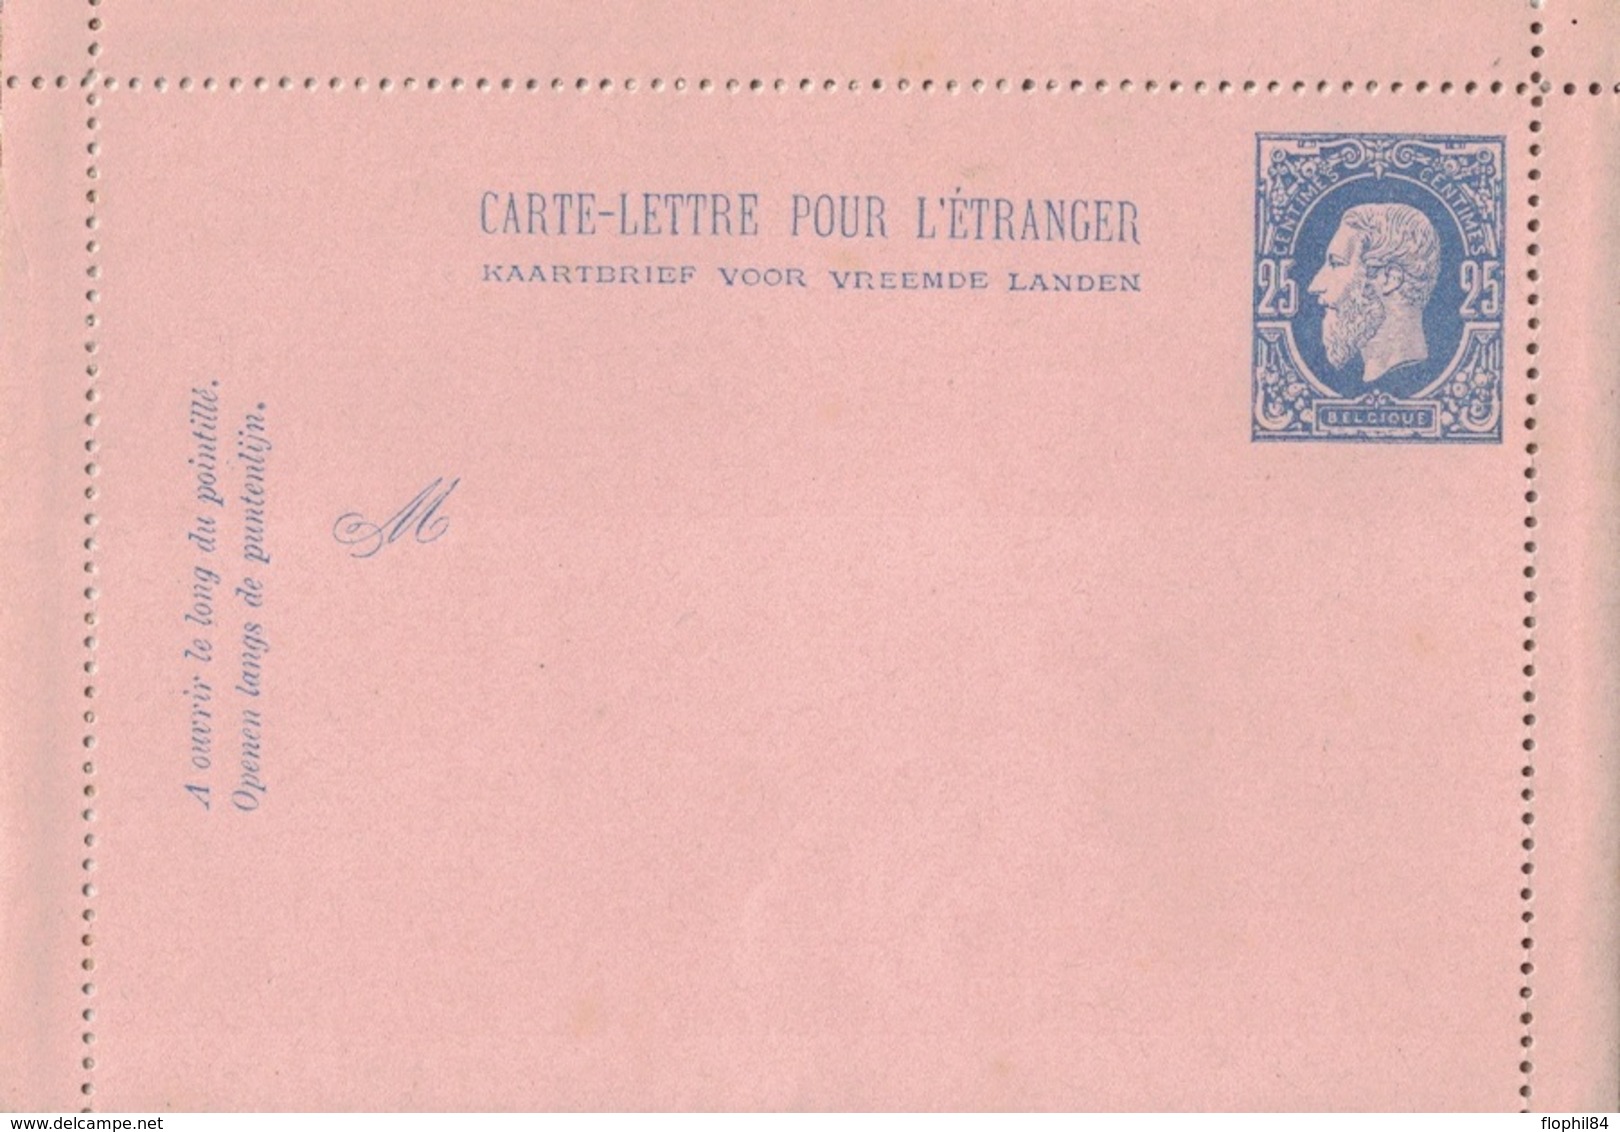 BELGIQUE - CARTE LETTRE NEUVE POUR L'ETRANGER - 25c BLEU. - Carte-Lettere